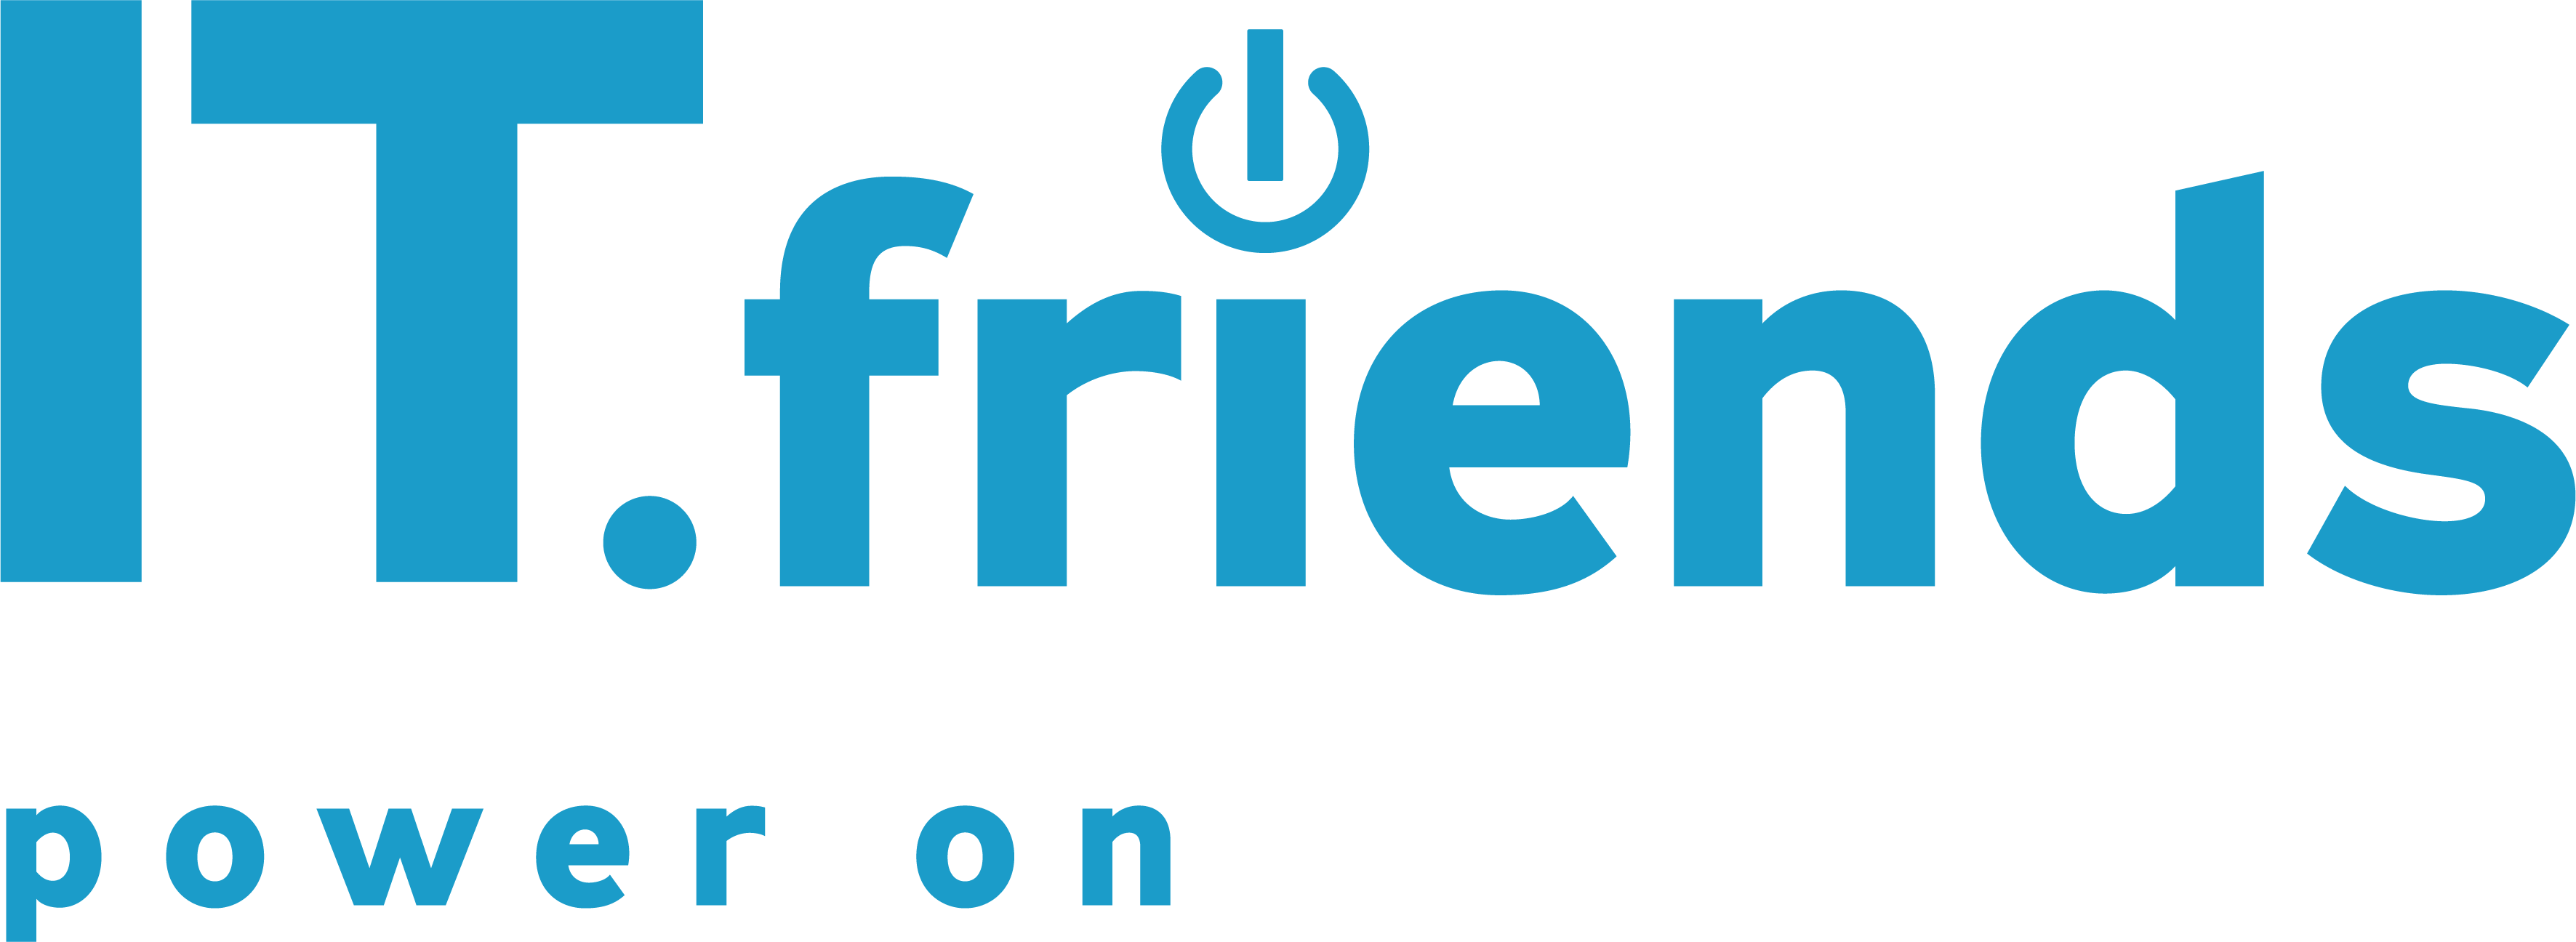 IT Friends logo